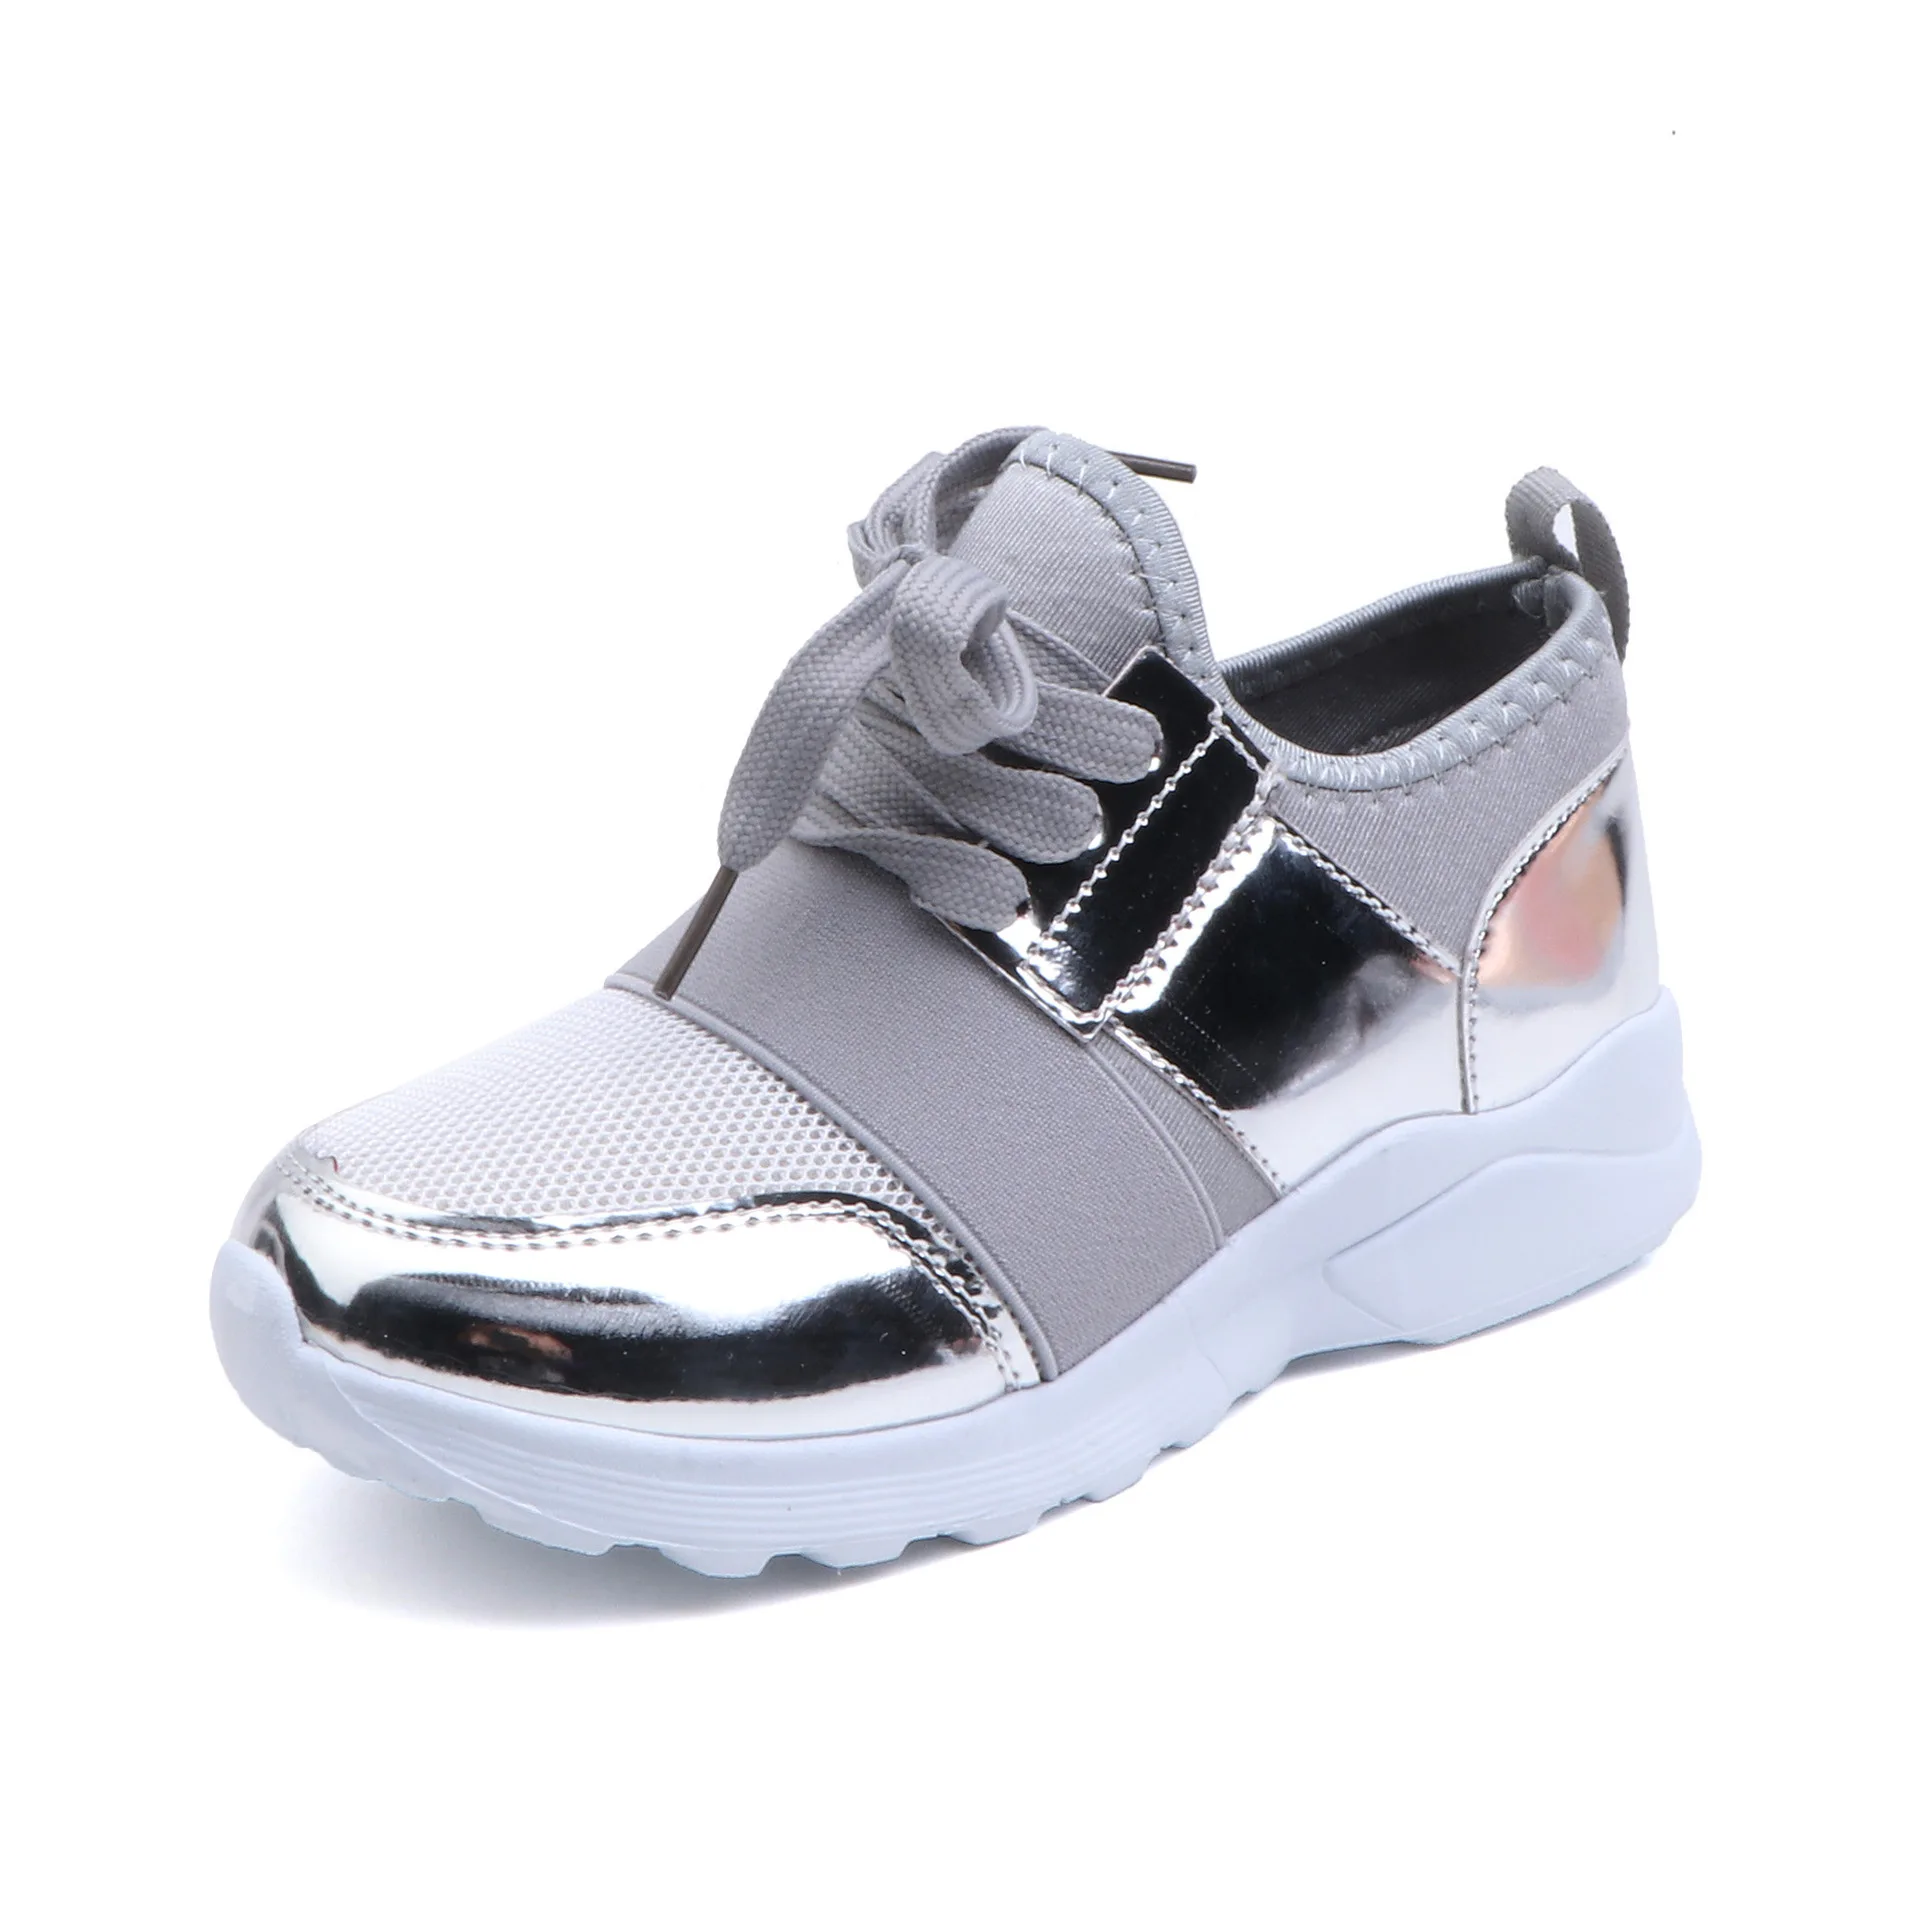 Kid Casual Fashion Sport Shoe Flat Mesh Balenciaga Child Shoe Girl Trainers Children Sneakers Shoes 3-12 Year